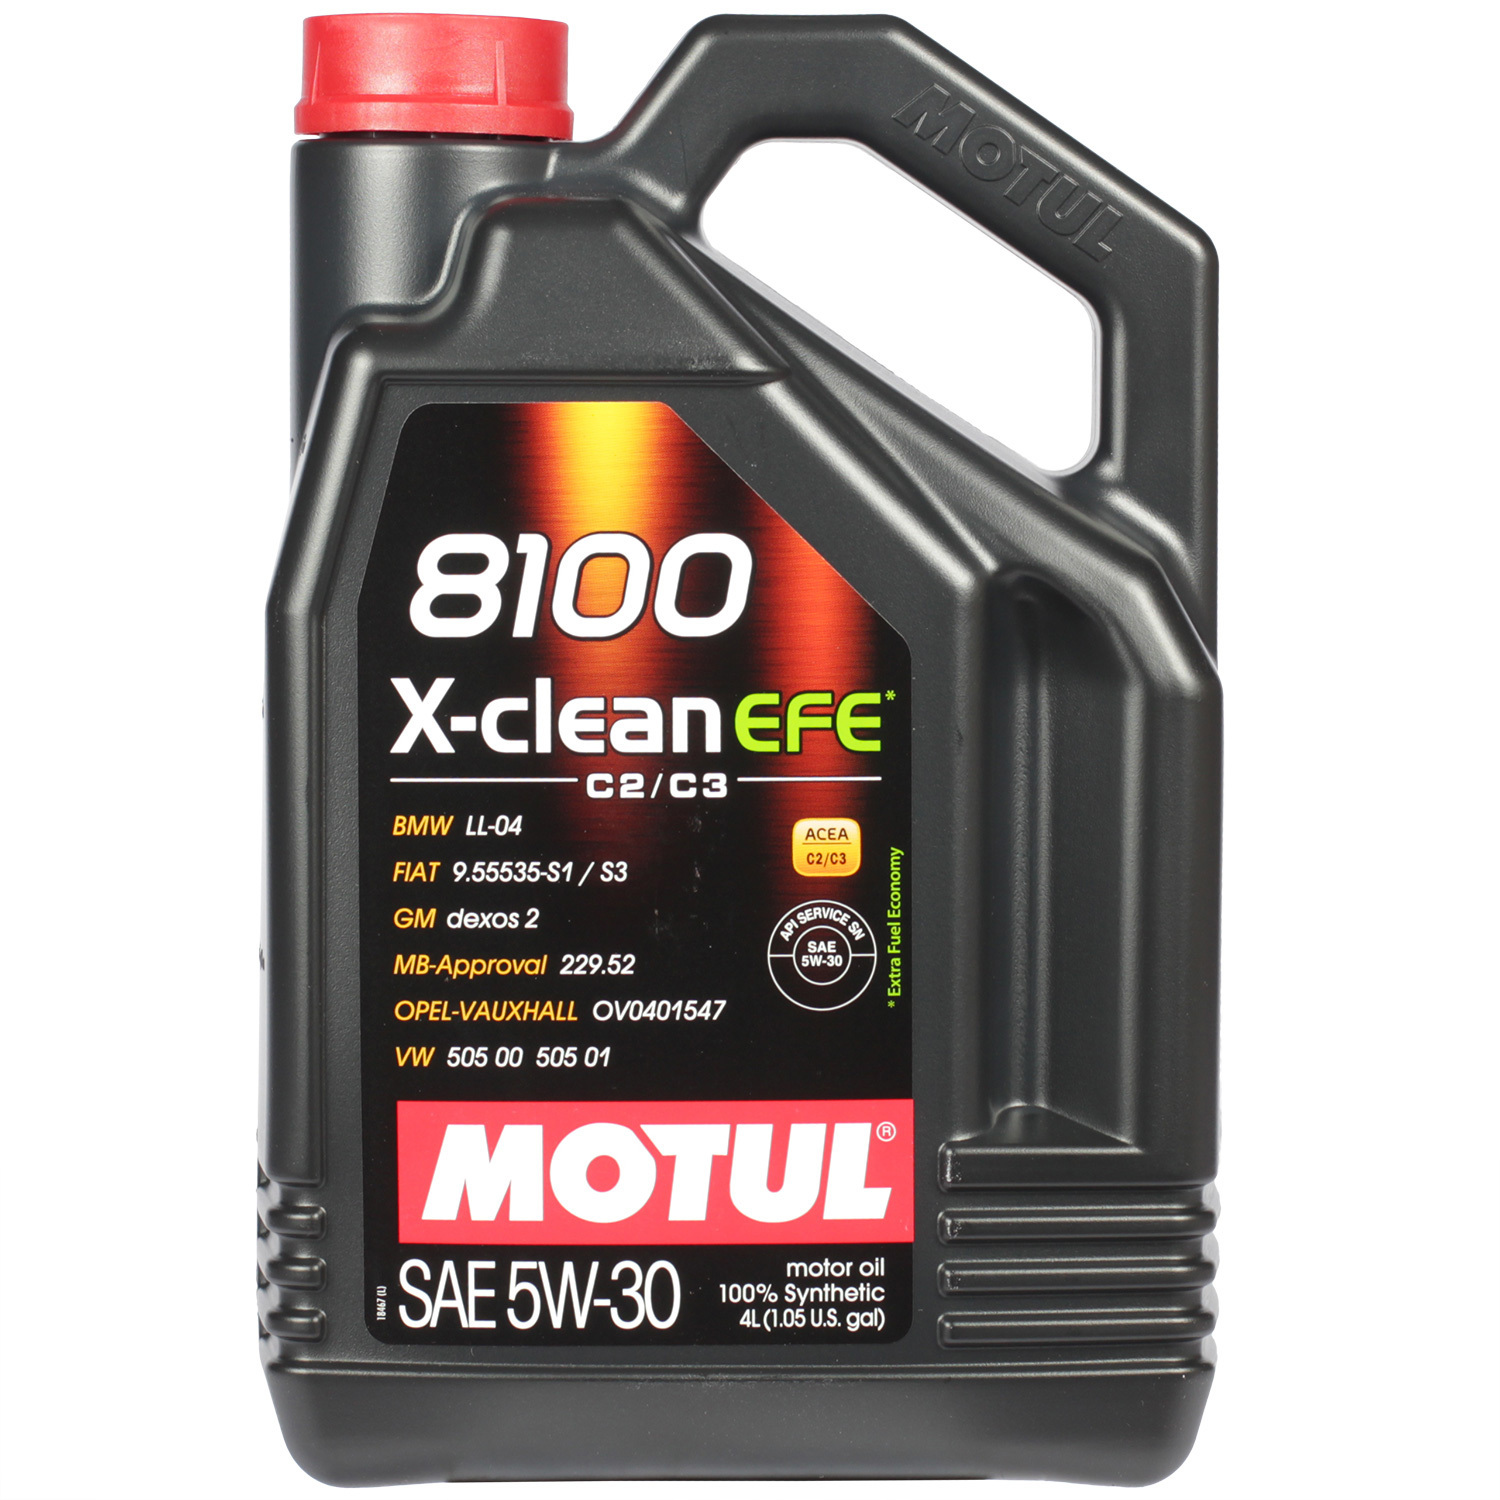 Motul Моторное масло Motul 8100 X-clean EFE 5W-30, 4 л масло моторное motul 6100 syn clean 5w 30 синтетическое 1 л